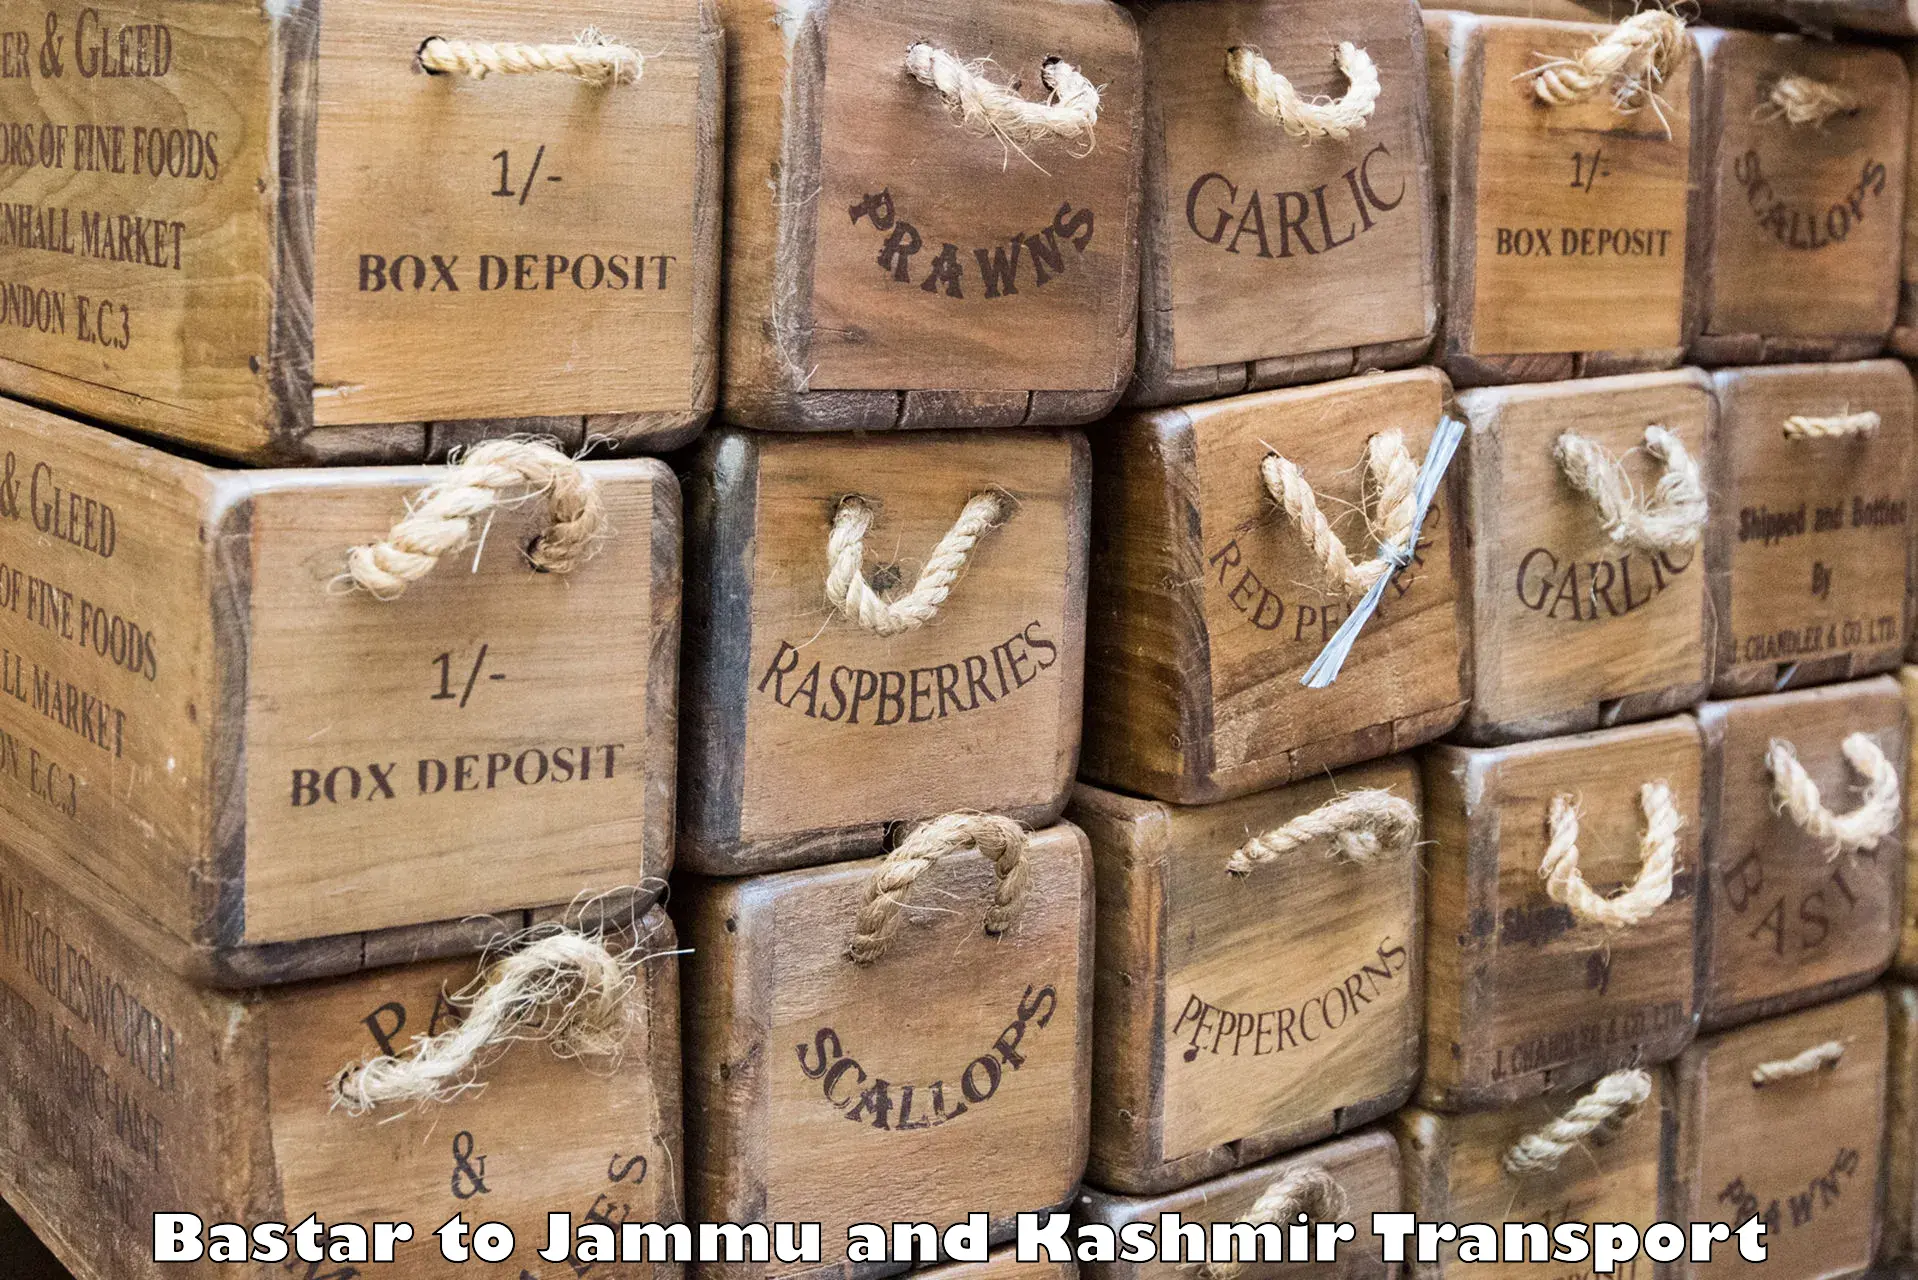 Shipping partner Bastar to Jammu and Kashmir